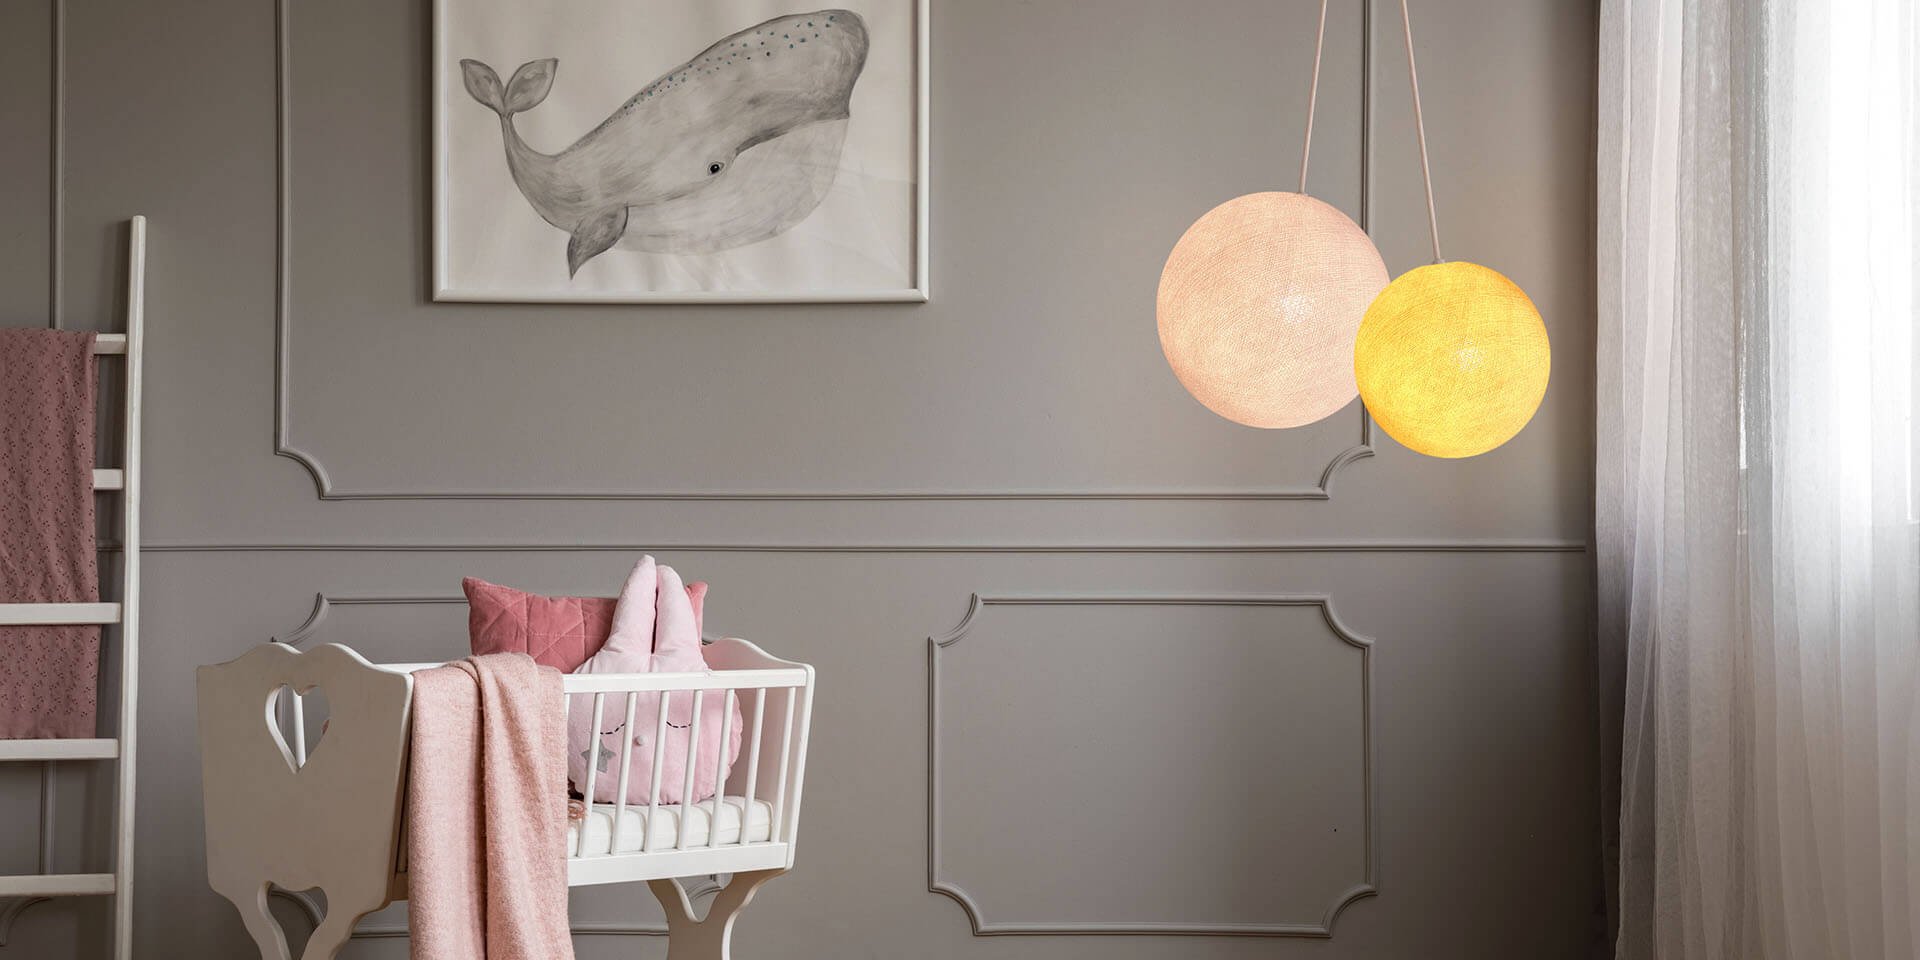 LED Deckenlampe mit 2 Kugeln aus Baumwolle. Pendelleuche in Weiß und Gelb. Höhenverstellbare Hängelampe, ideal für Kinderzimmer und Babyzimmer. Dimmbare Deckenleuchte.